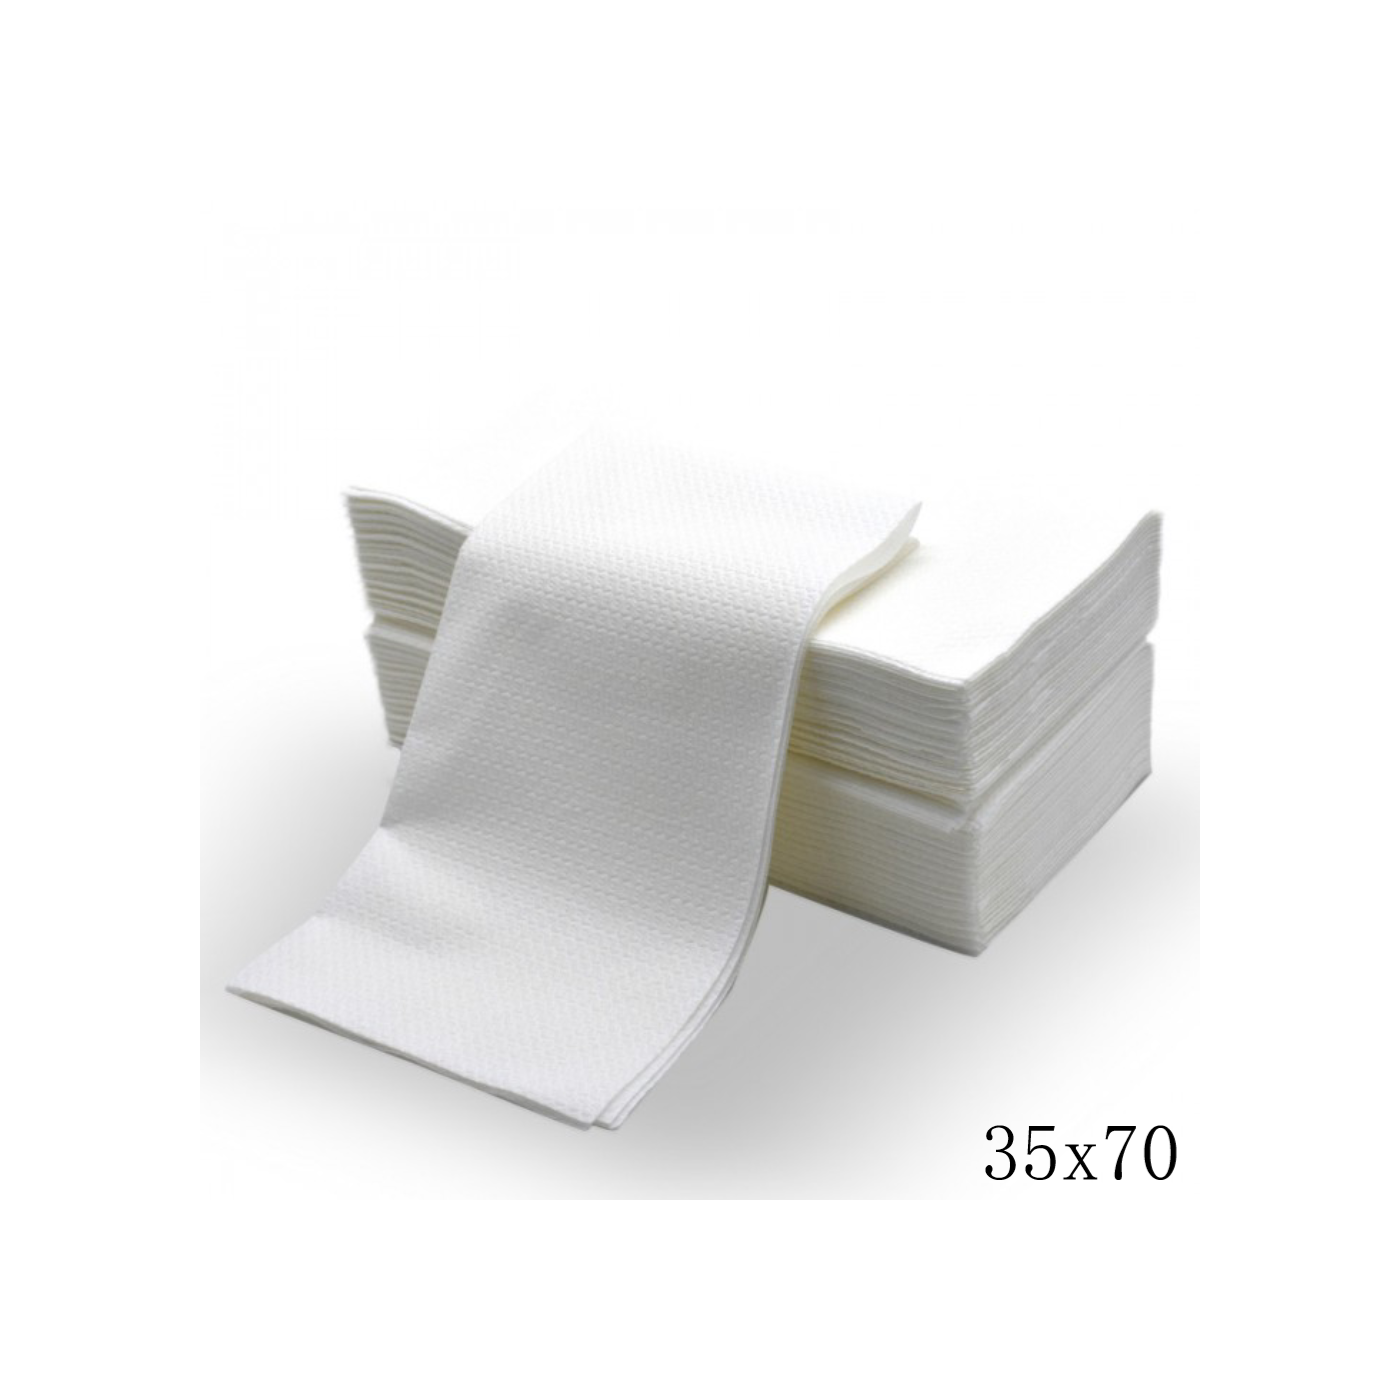 Asciugamani monouso in carta a secco cm 35x70